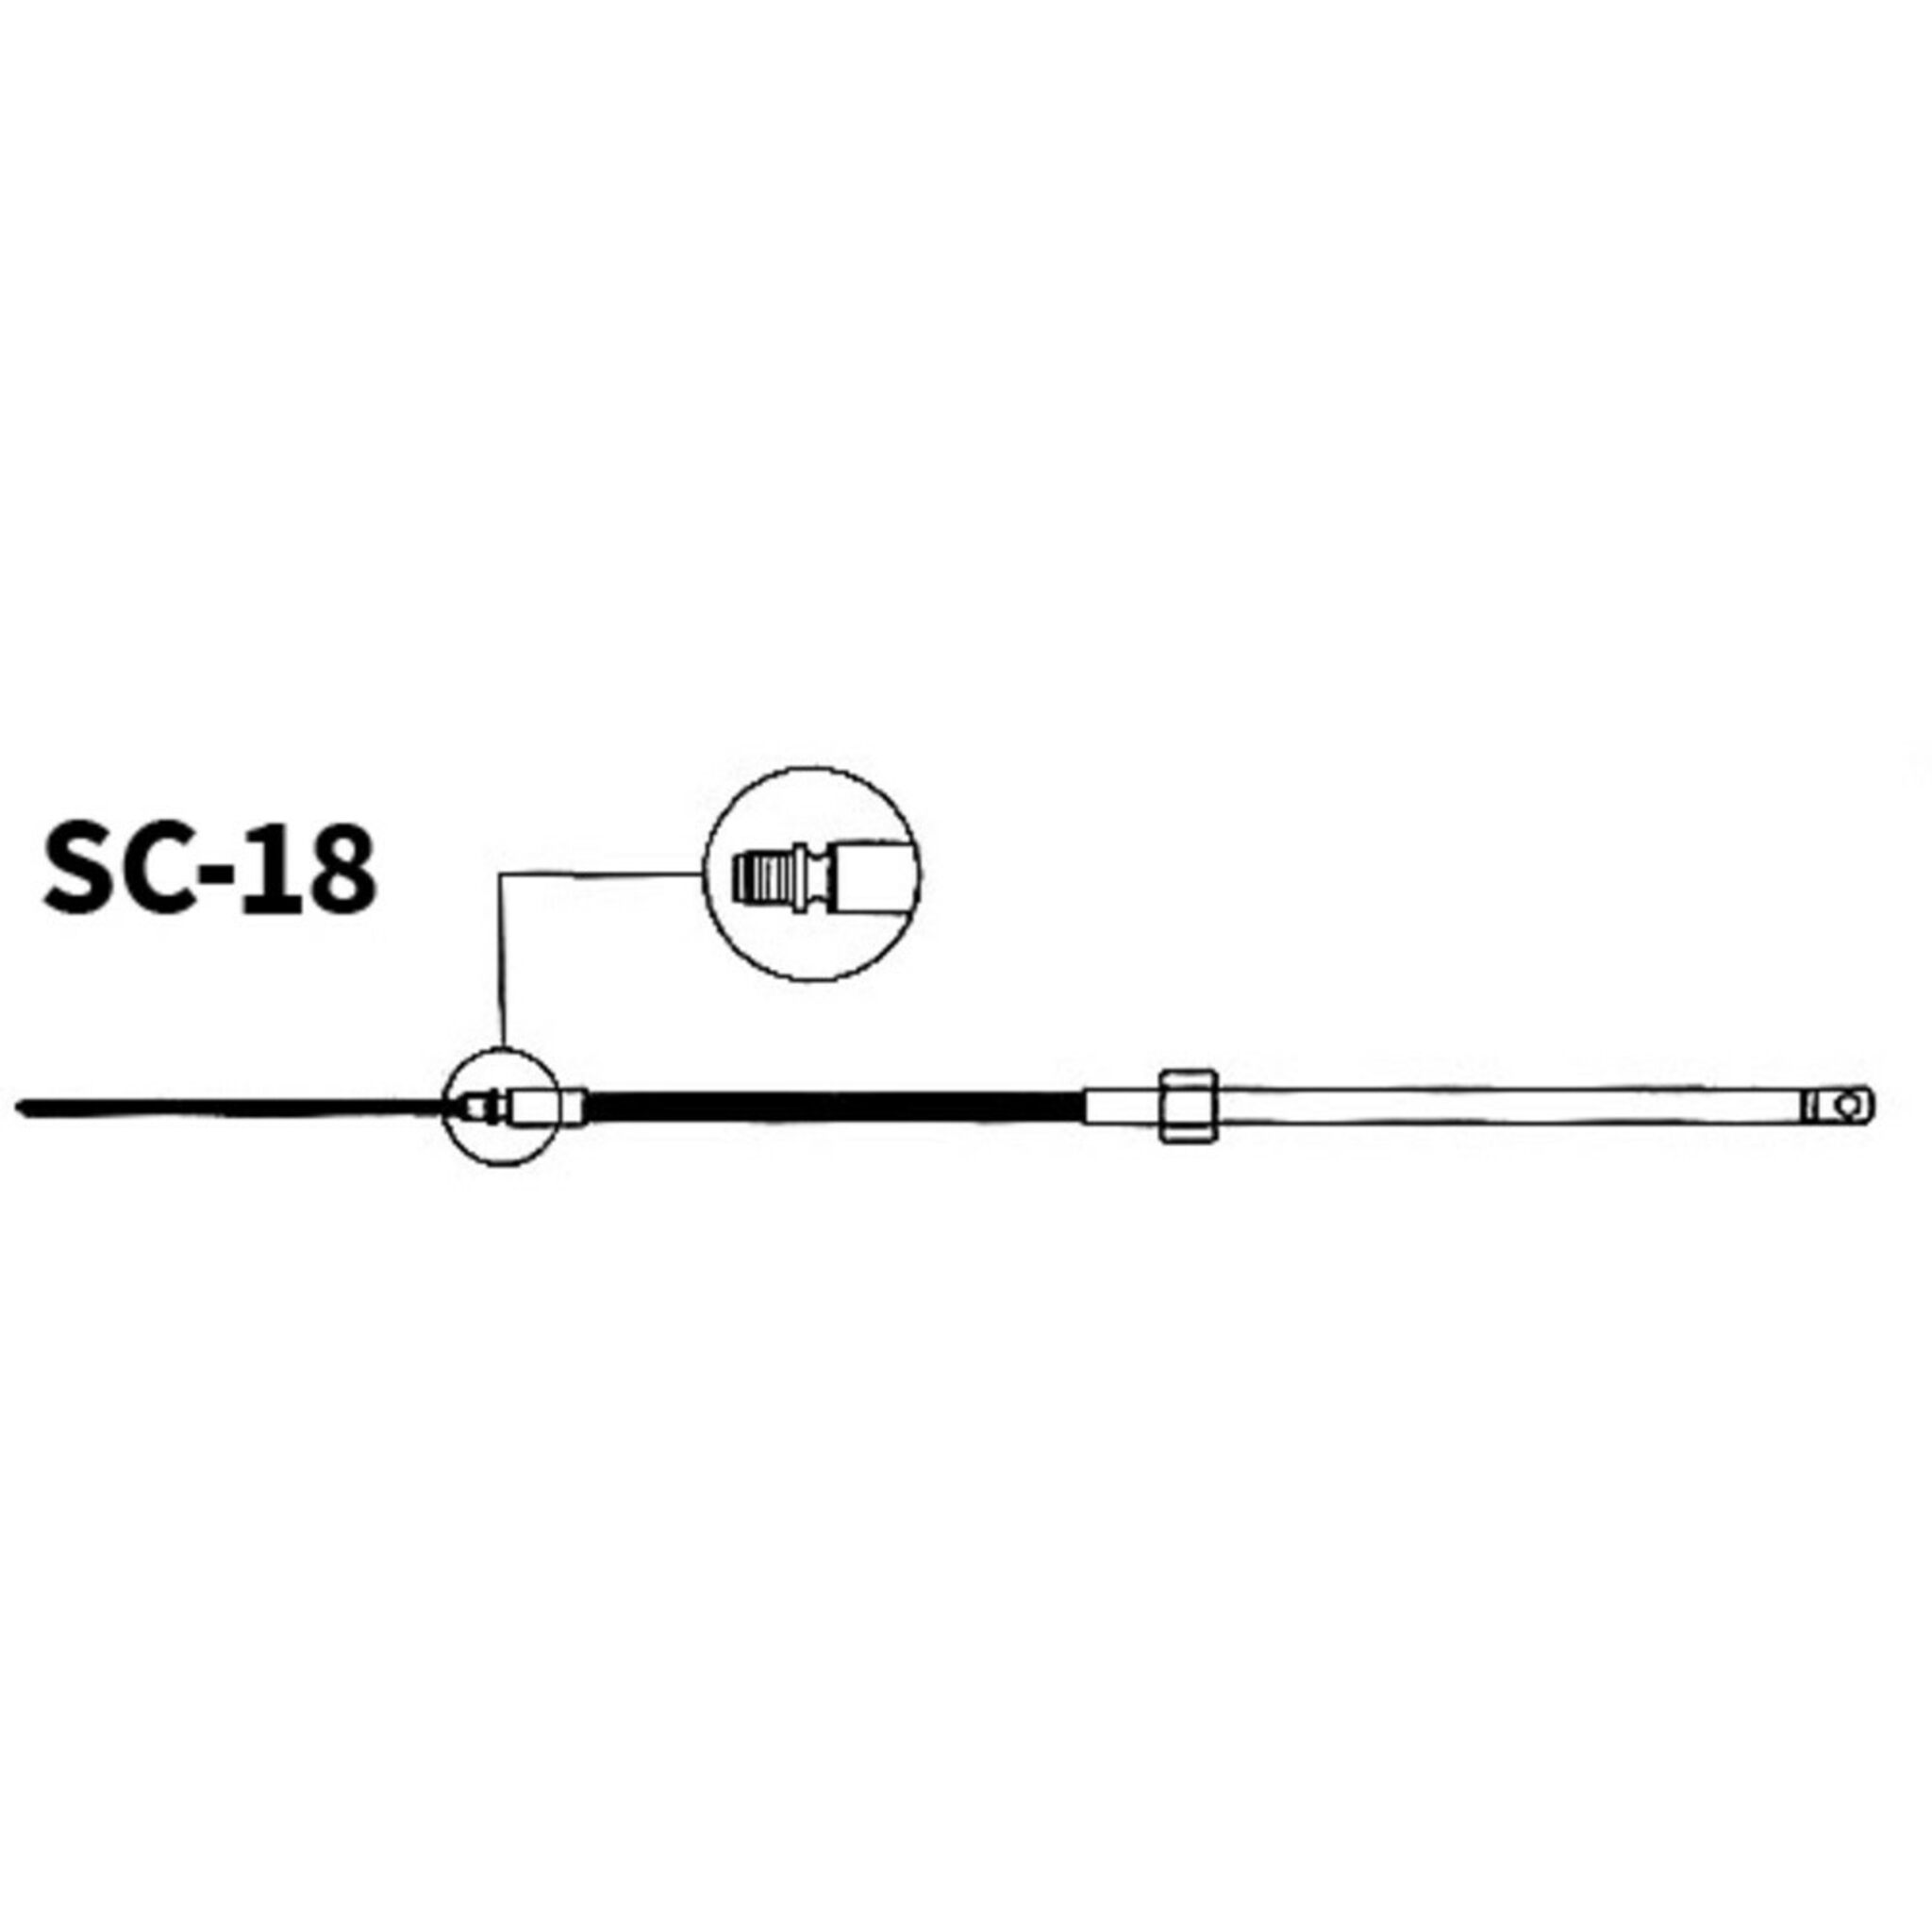 Steuerkabel SC-18 für Multiflex Steuerwerk LM-H-201